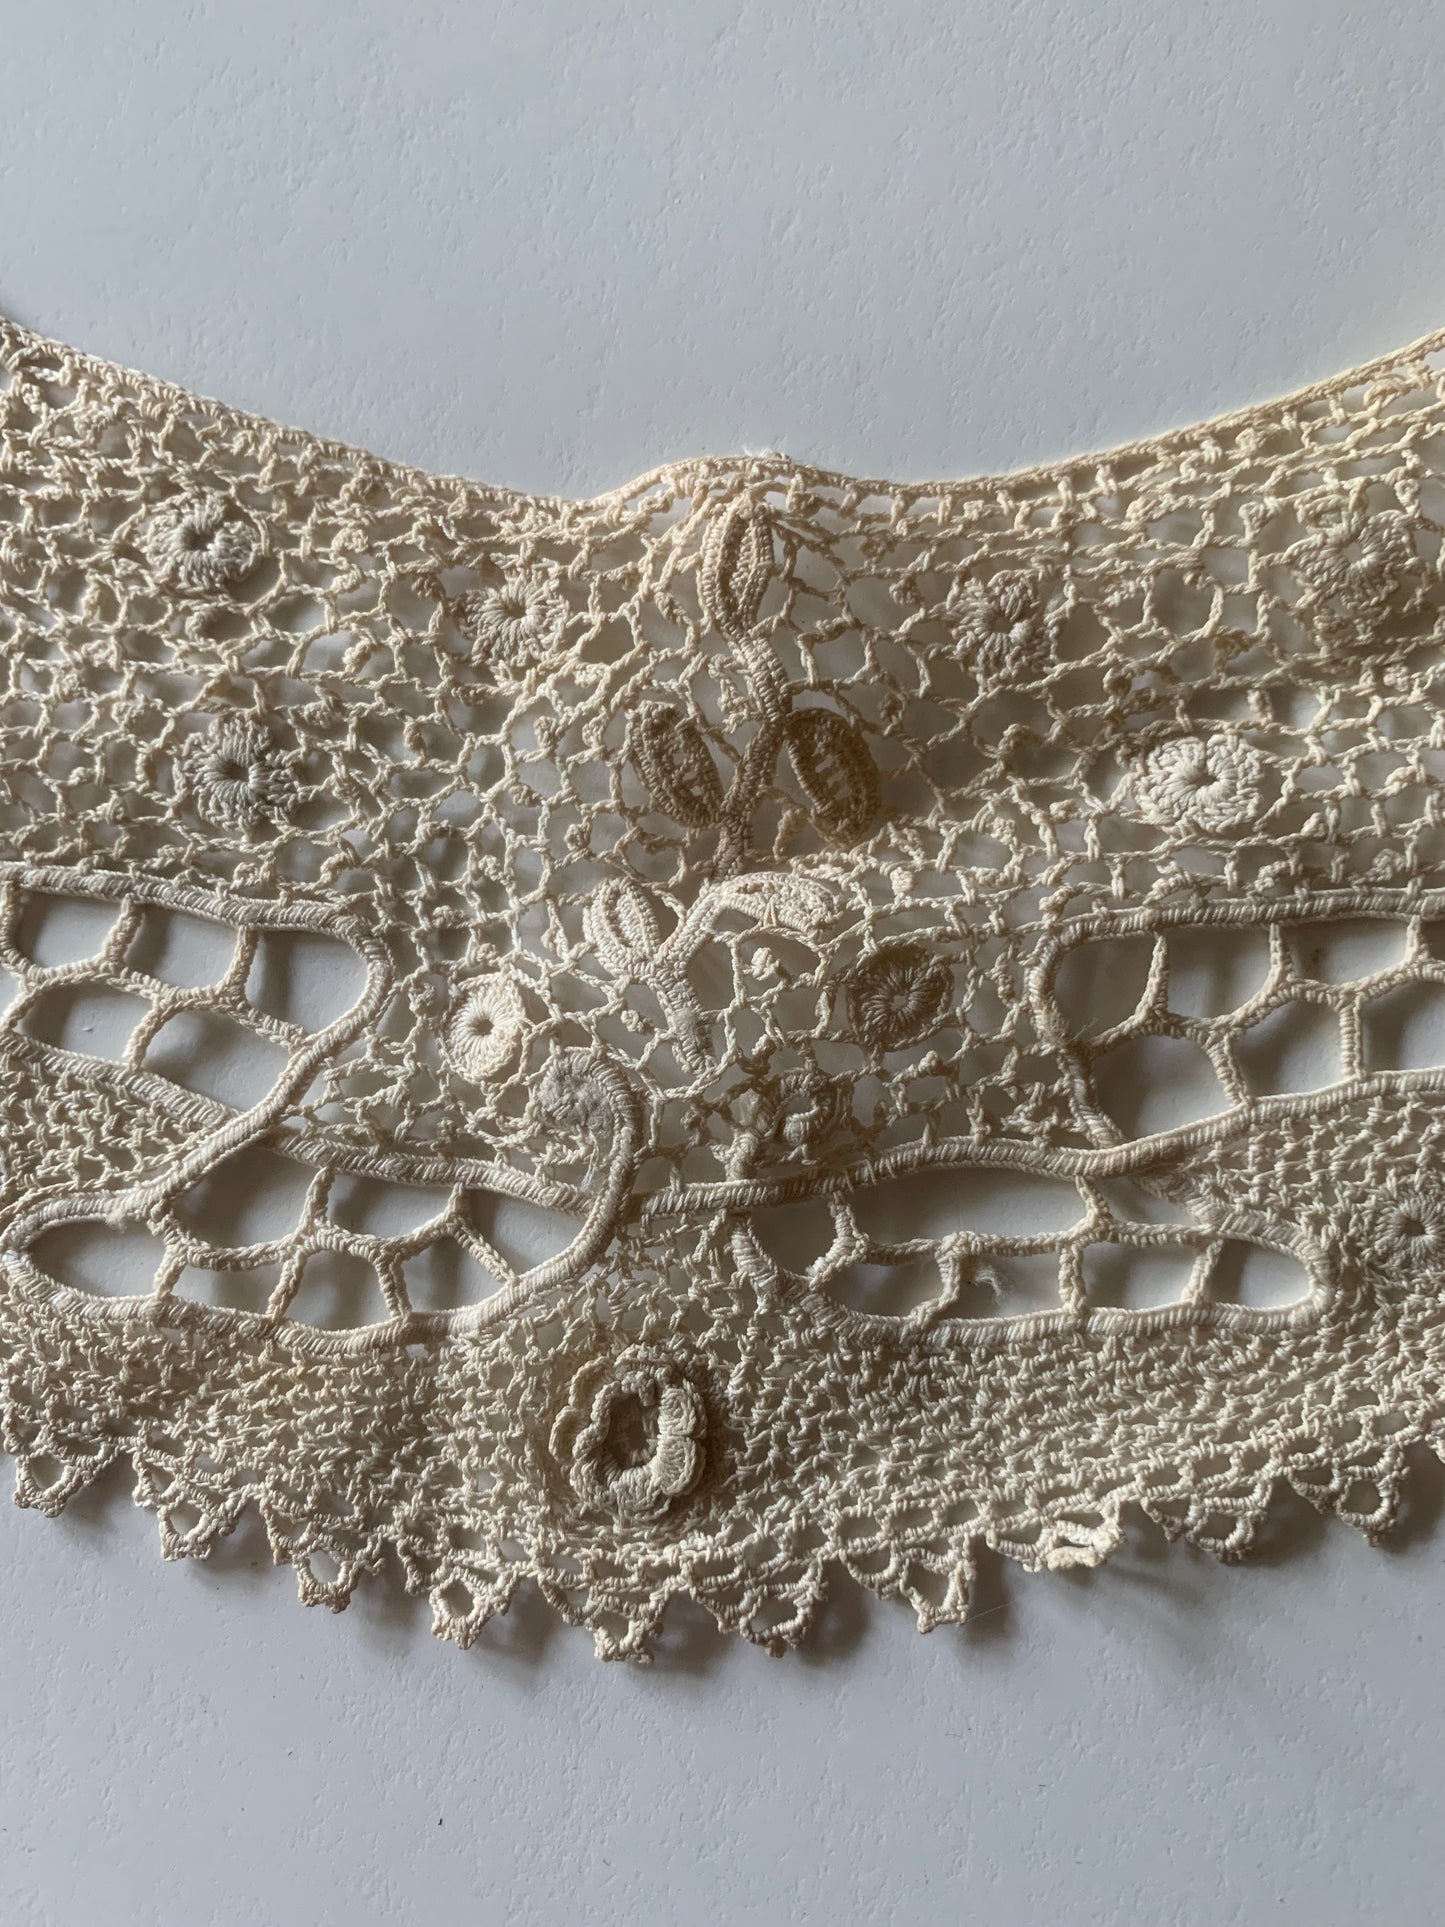 Ecru Floral Small Lace Collar circa 1800s